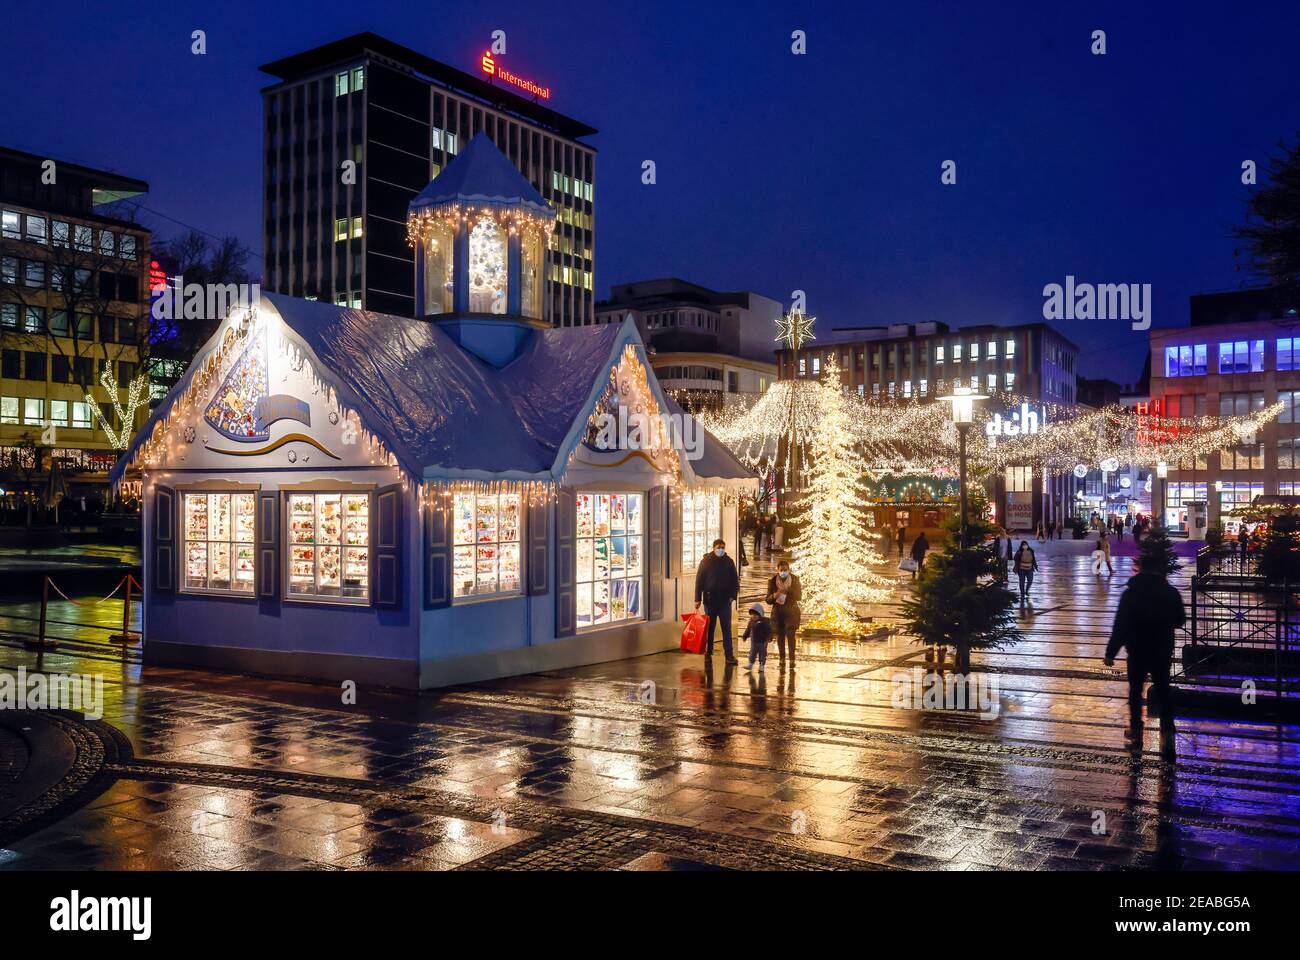 Essen, zona della Ruhr, Renania Settentrionale-Vestfalia, Germania - Essen centro città in tempi della crisi della corona al tempo di Natale alla vigilia del secondo blocco, i negozi e le poche bancarelle del mercatino di Natale sono ancora aperti, i passanti stanno passeggiando attraverso la vuota Kennedyplatz. Foto Stock